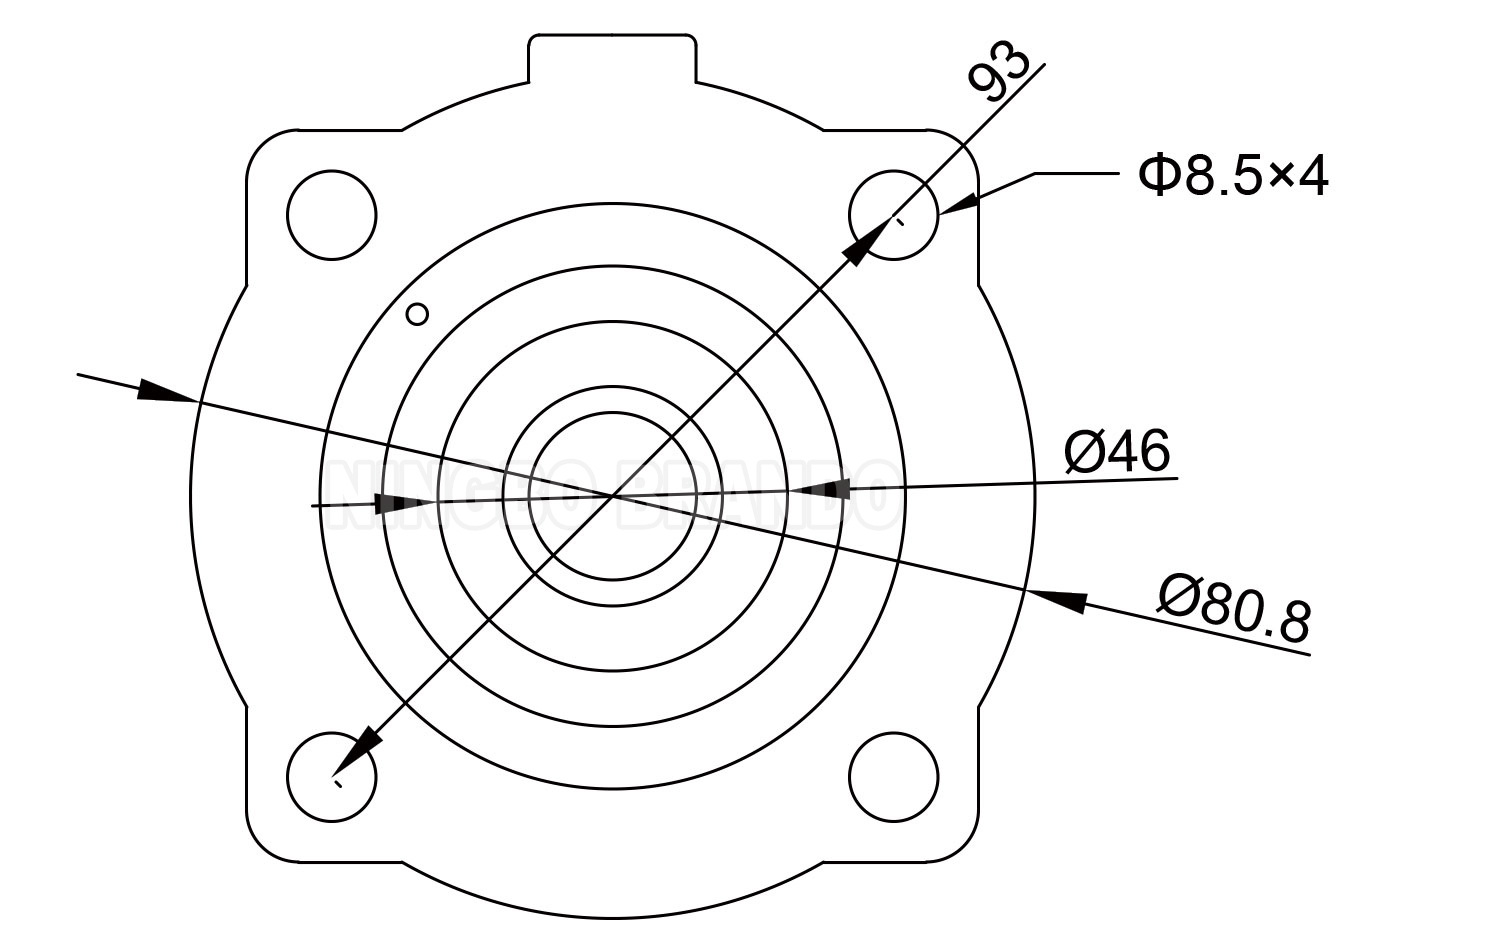 K2546 Diaphragme de l'onde de choc pour collecteur de poussière Kit de réparation de la membrane de soupape de jet de poussière 0